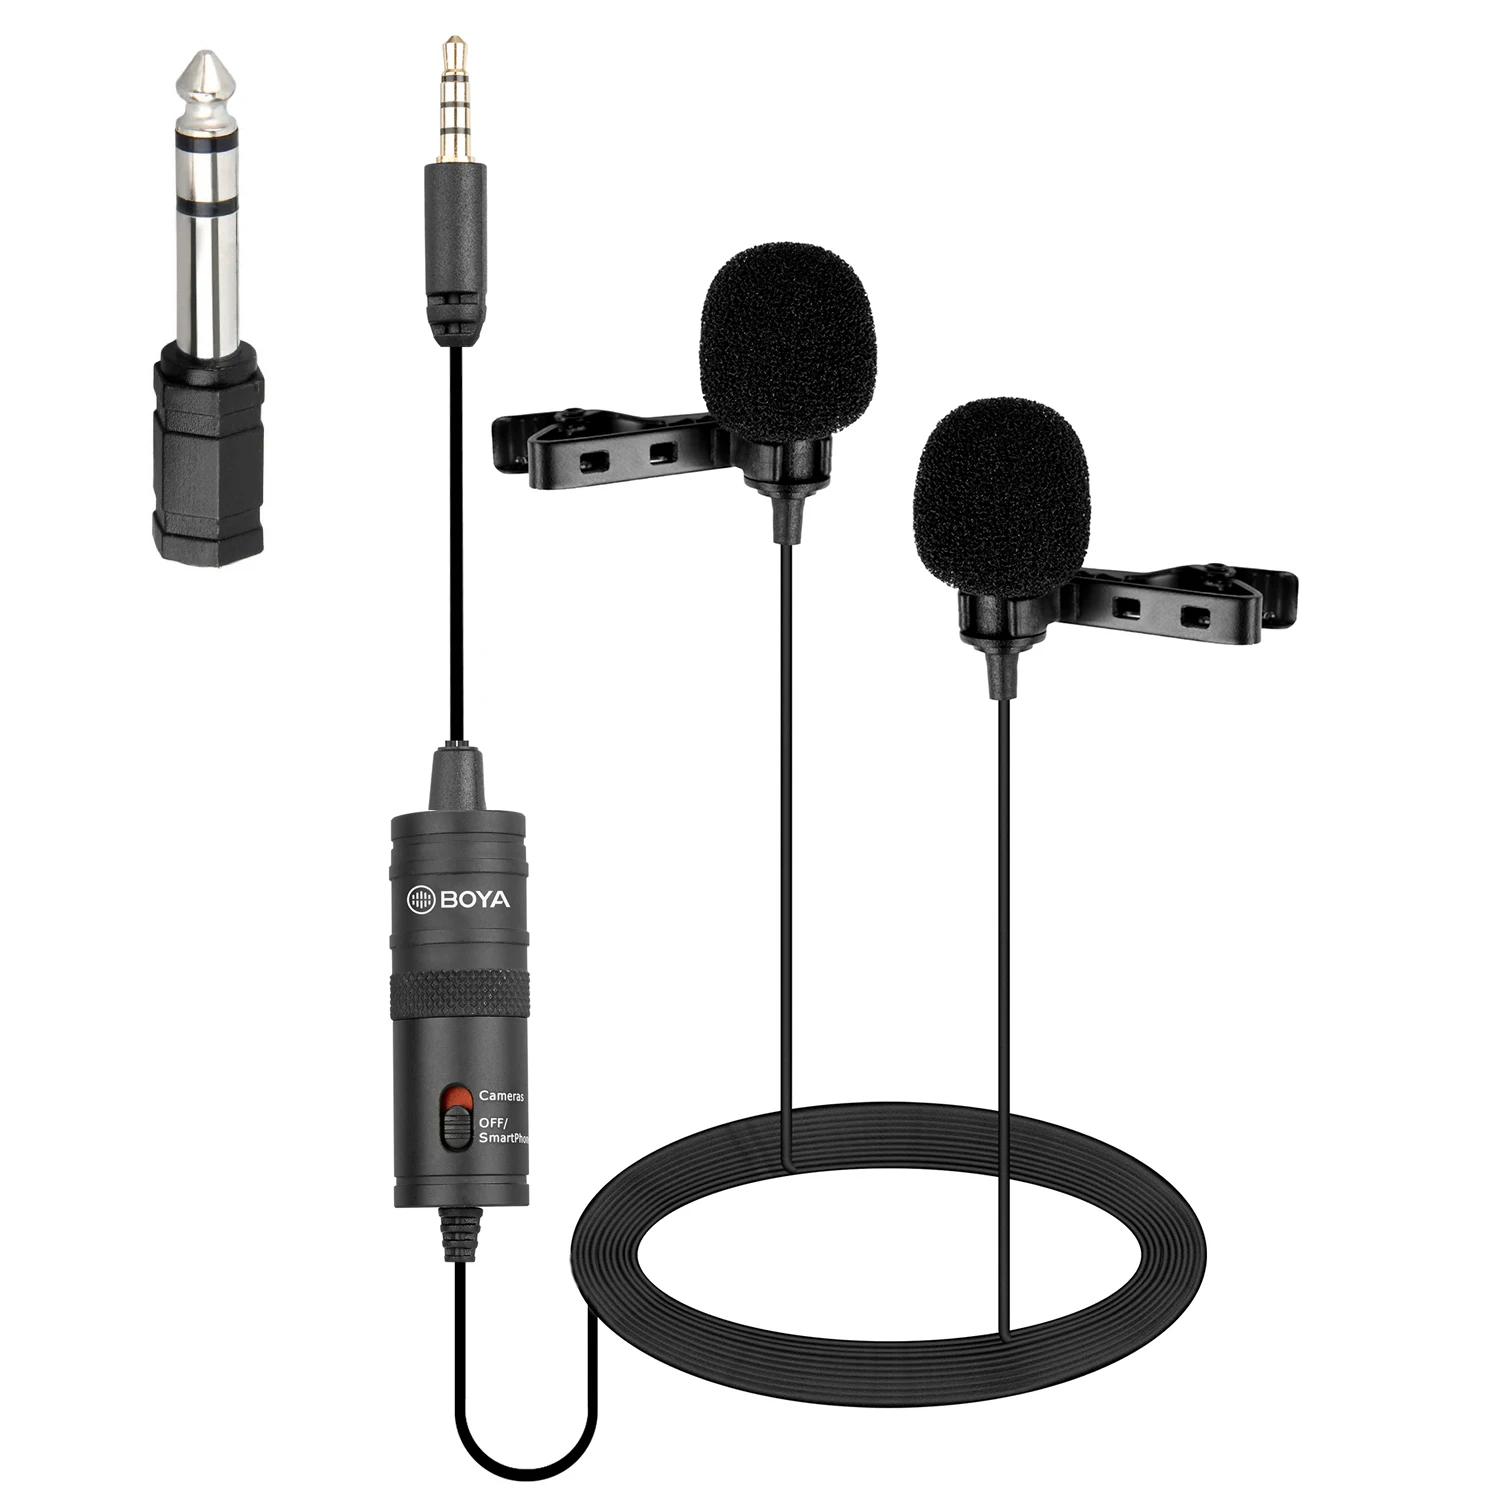 

Петличный микрофон BOYA BY-M1DM 4 м с двумя головками, с креплением на лацкан и стереоразъемом 1/8 дюйма для цифровой зеркальной камеры, устройства ...